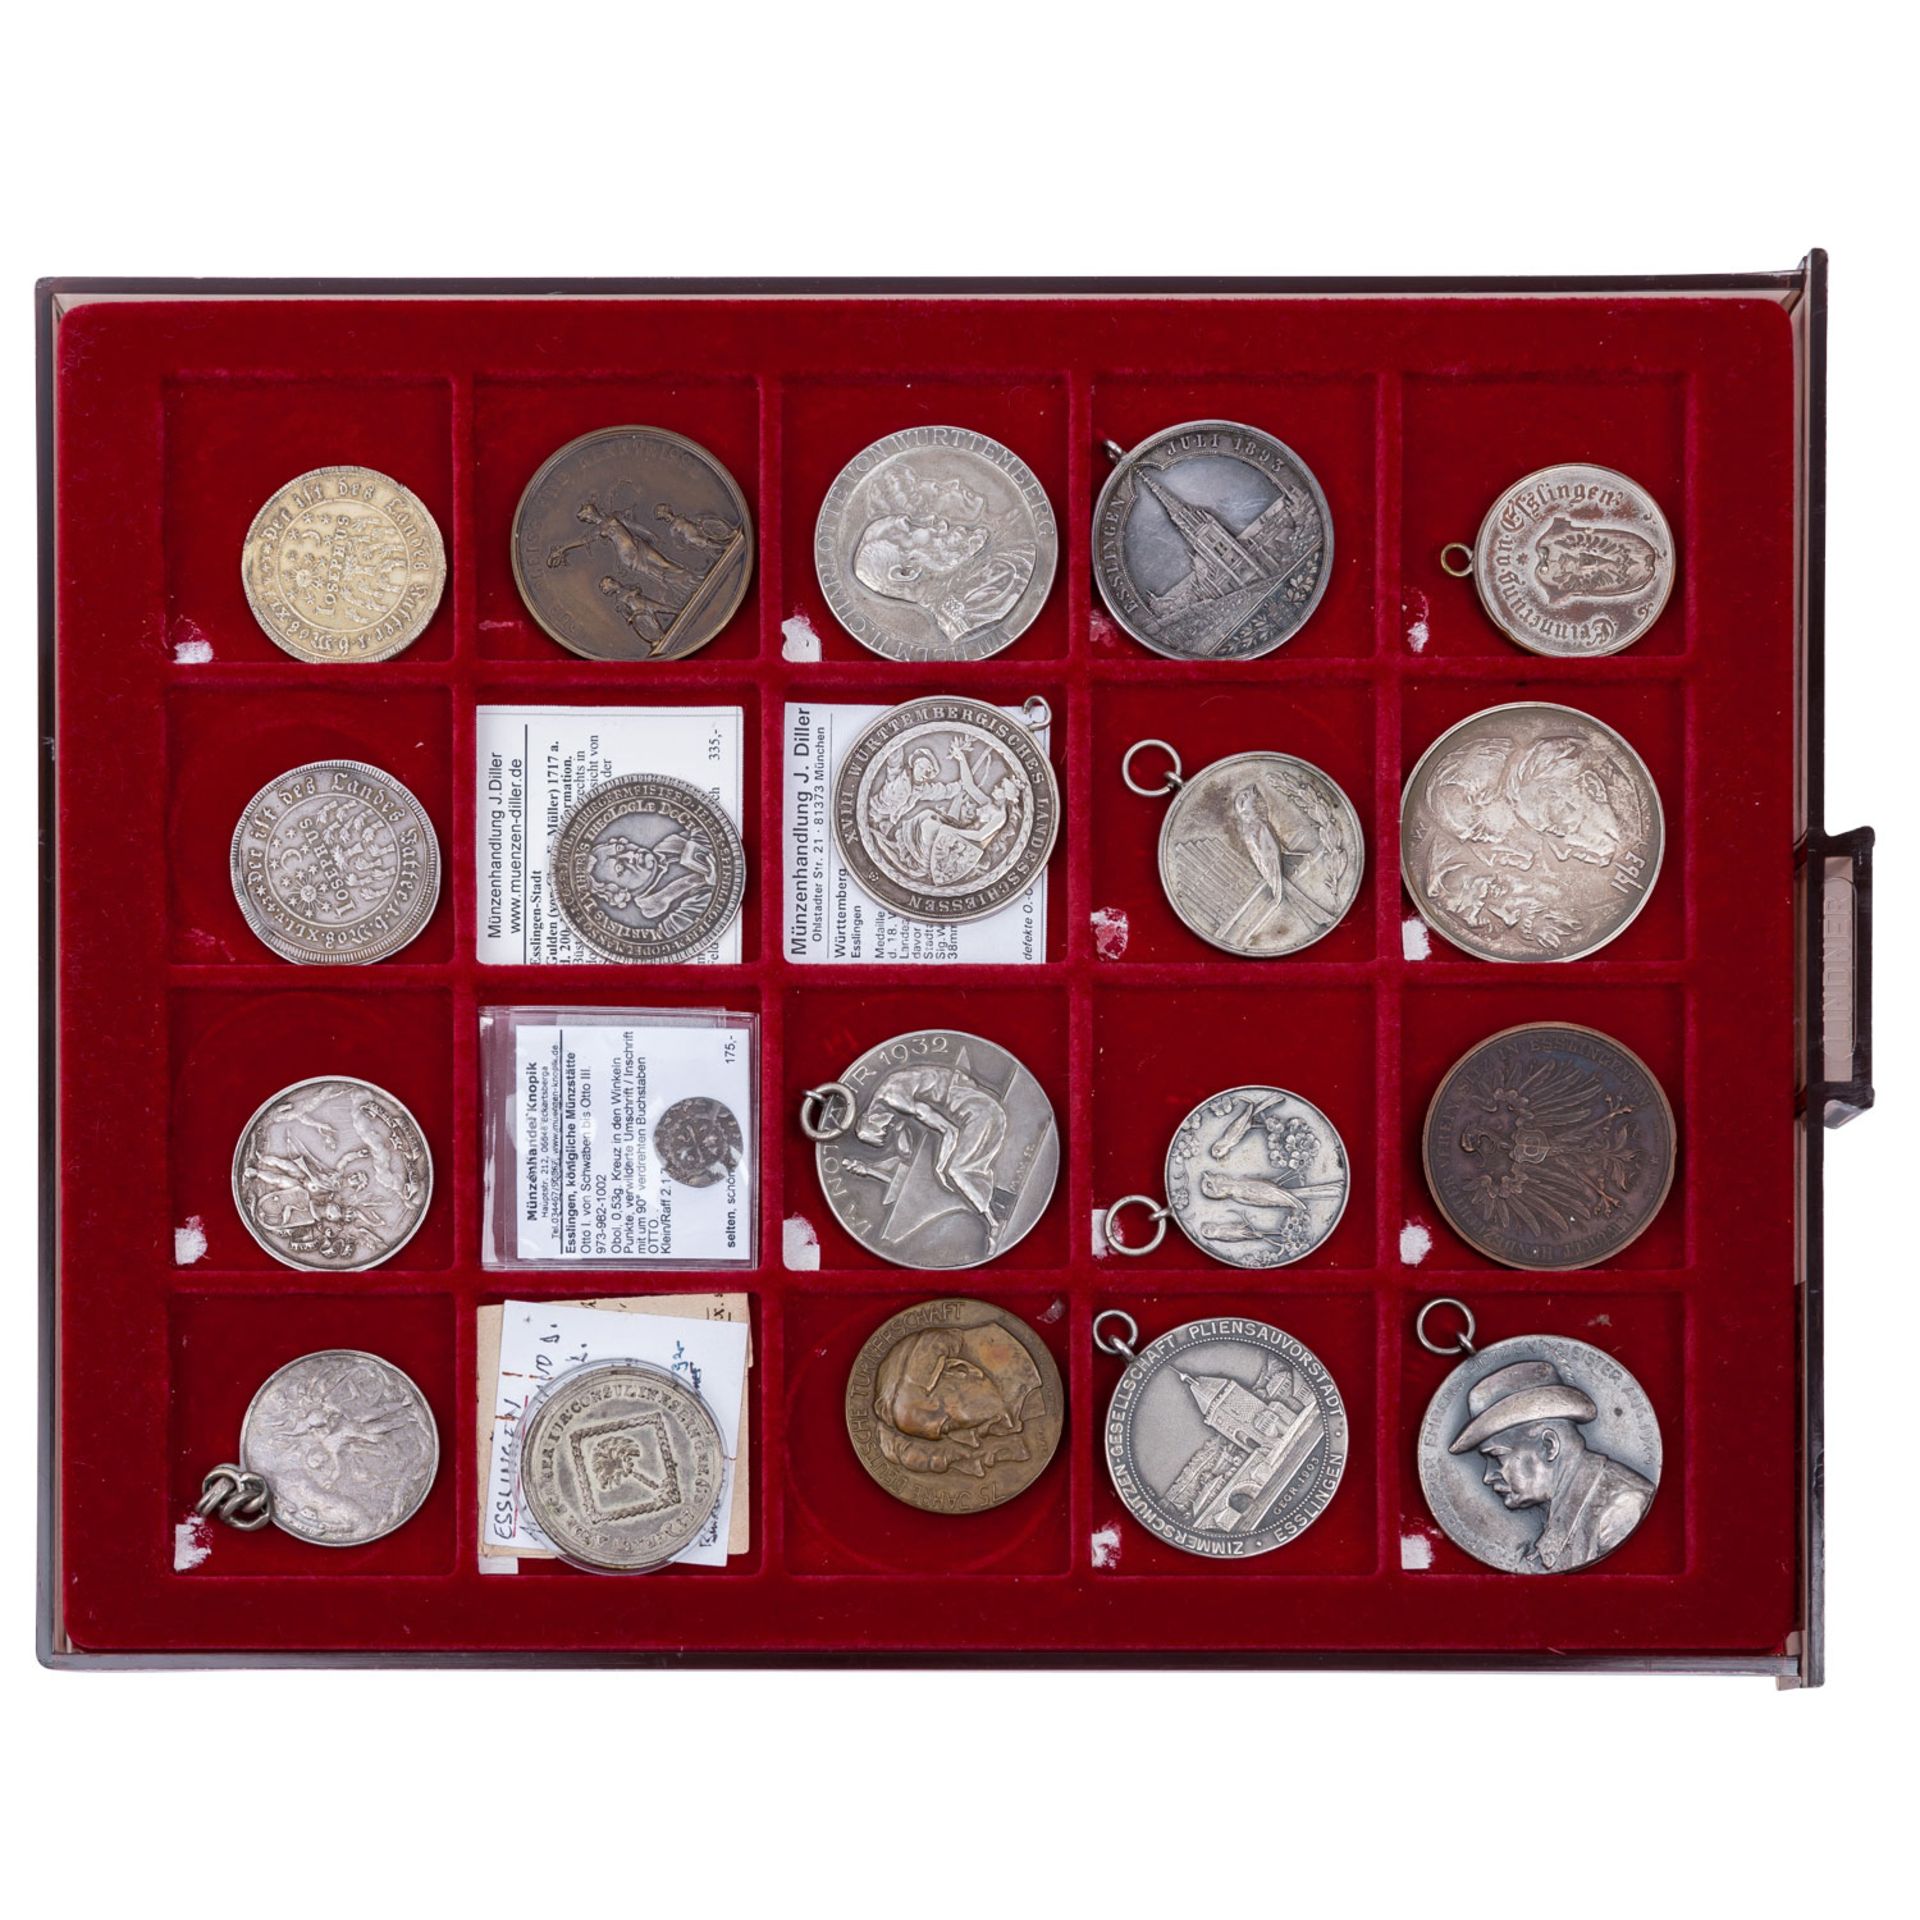 Esslingen - Spannende Großsammlung von Münzen, Medaillen, Plaketten und weiteres über die Stadtgesch - Image 5 of 7